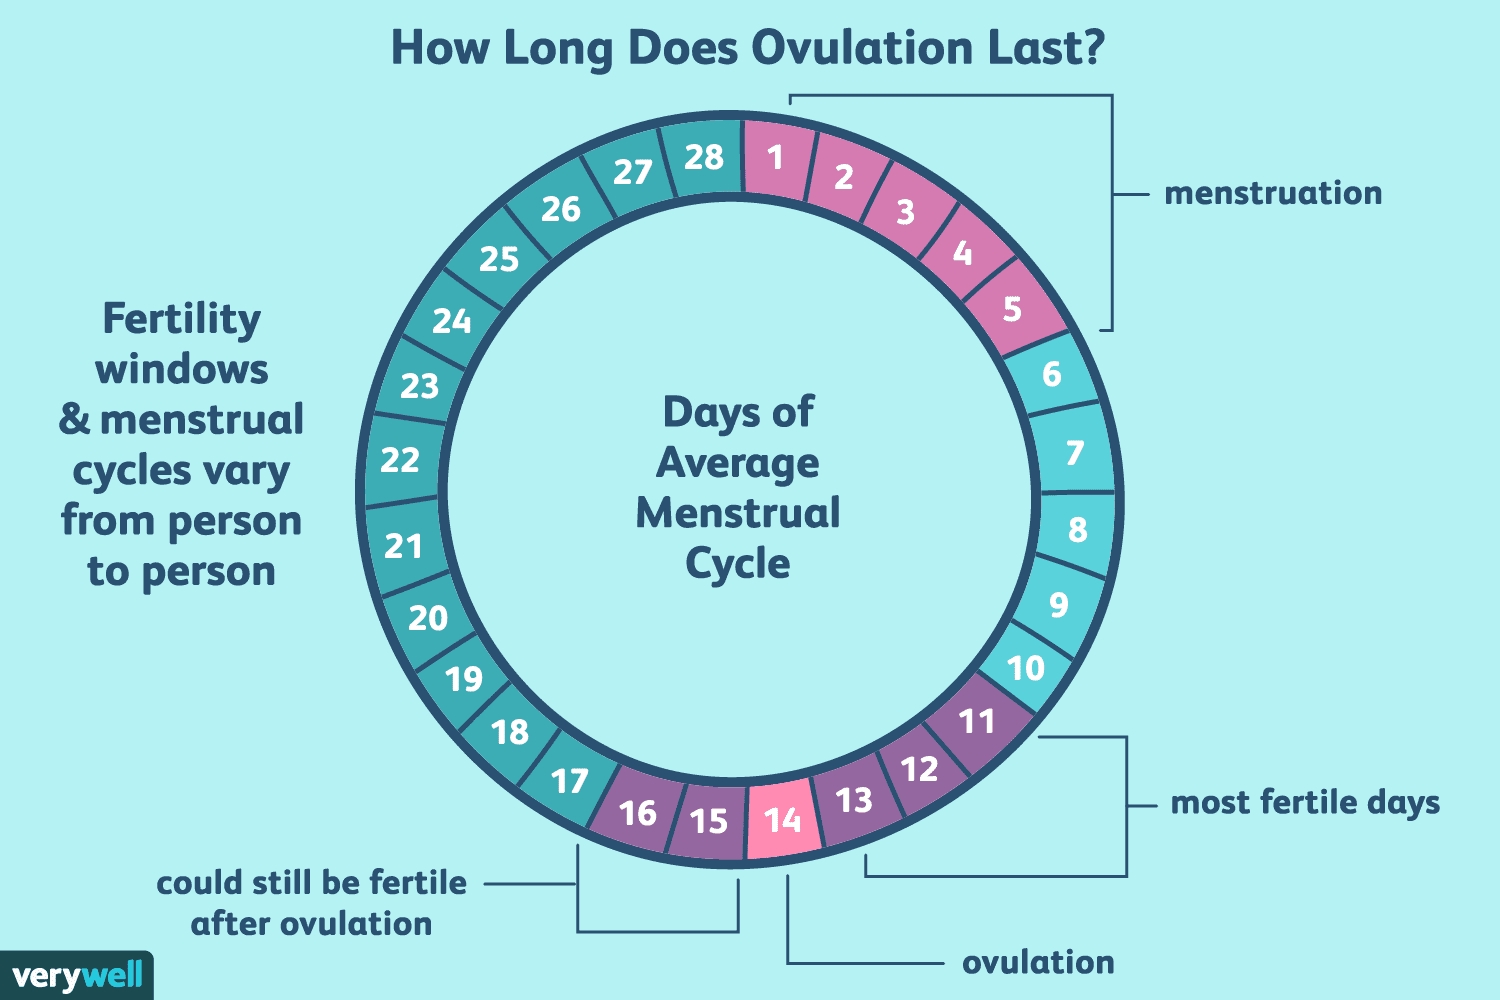 Ovulation Calendar 3 Week Cycle Month Calendar Printable